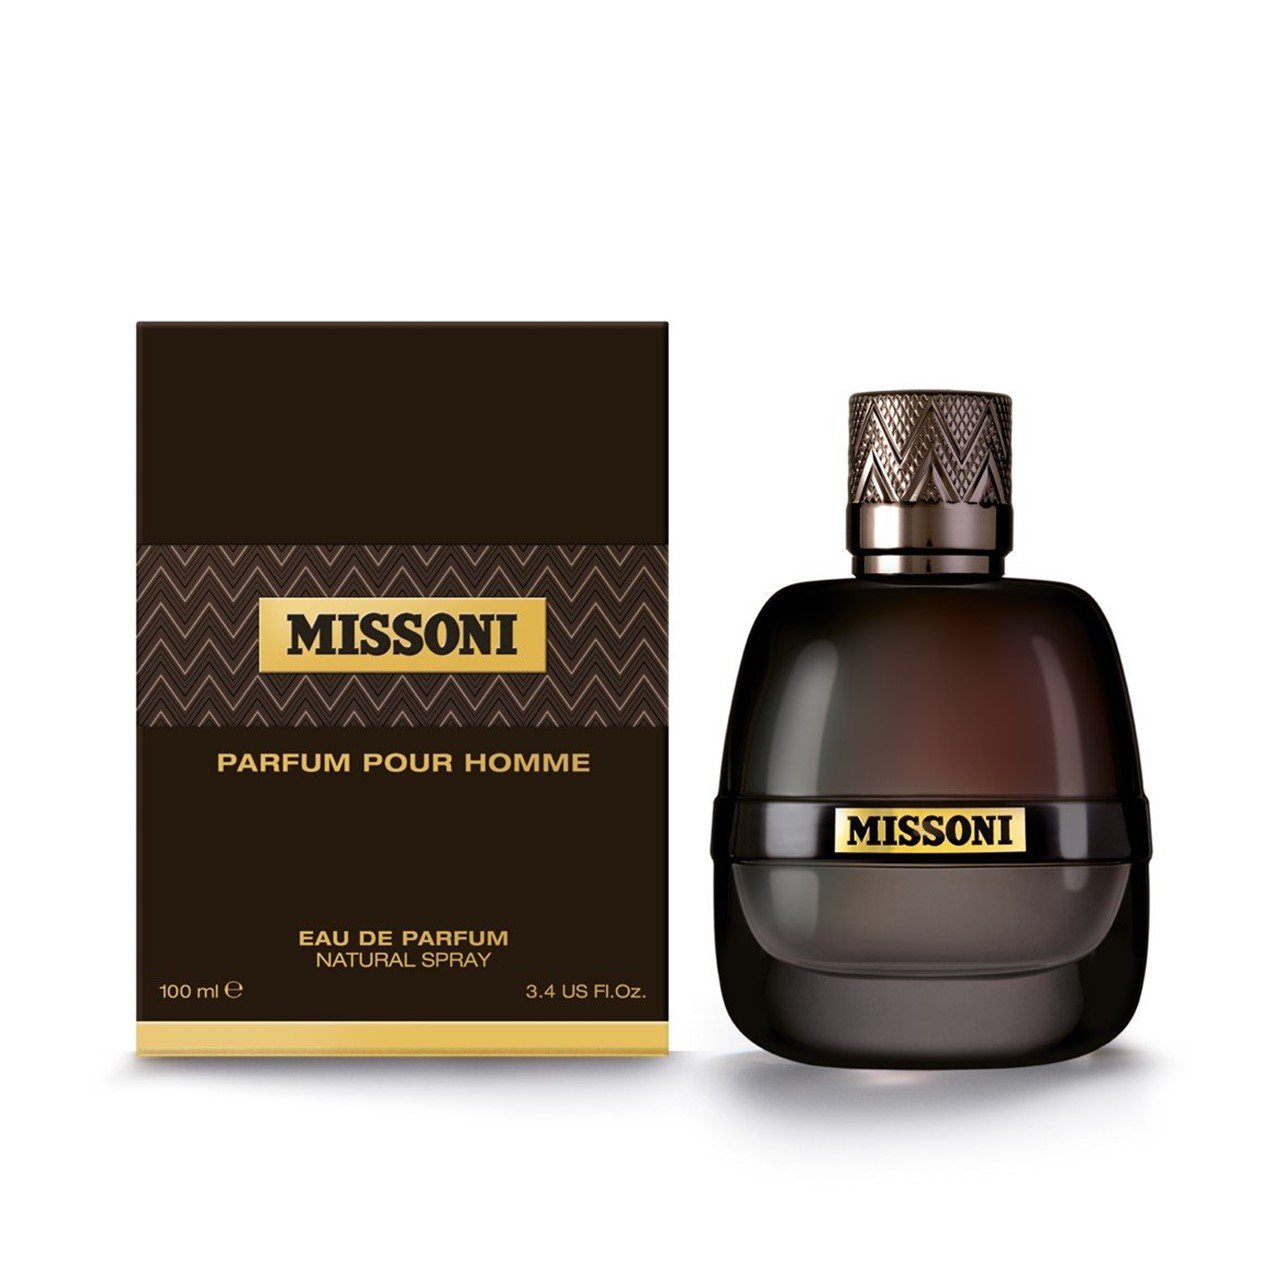 Rose Radiant Gold Michael Kors perfume  a fragrance for women 2015